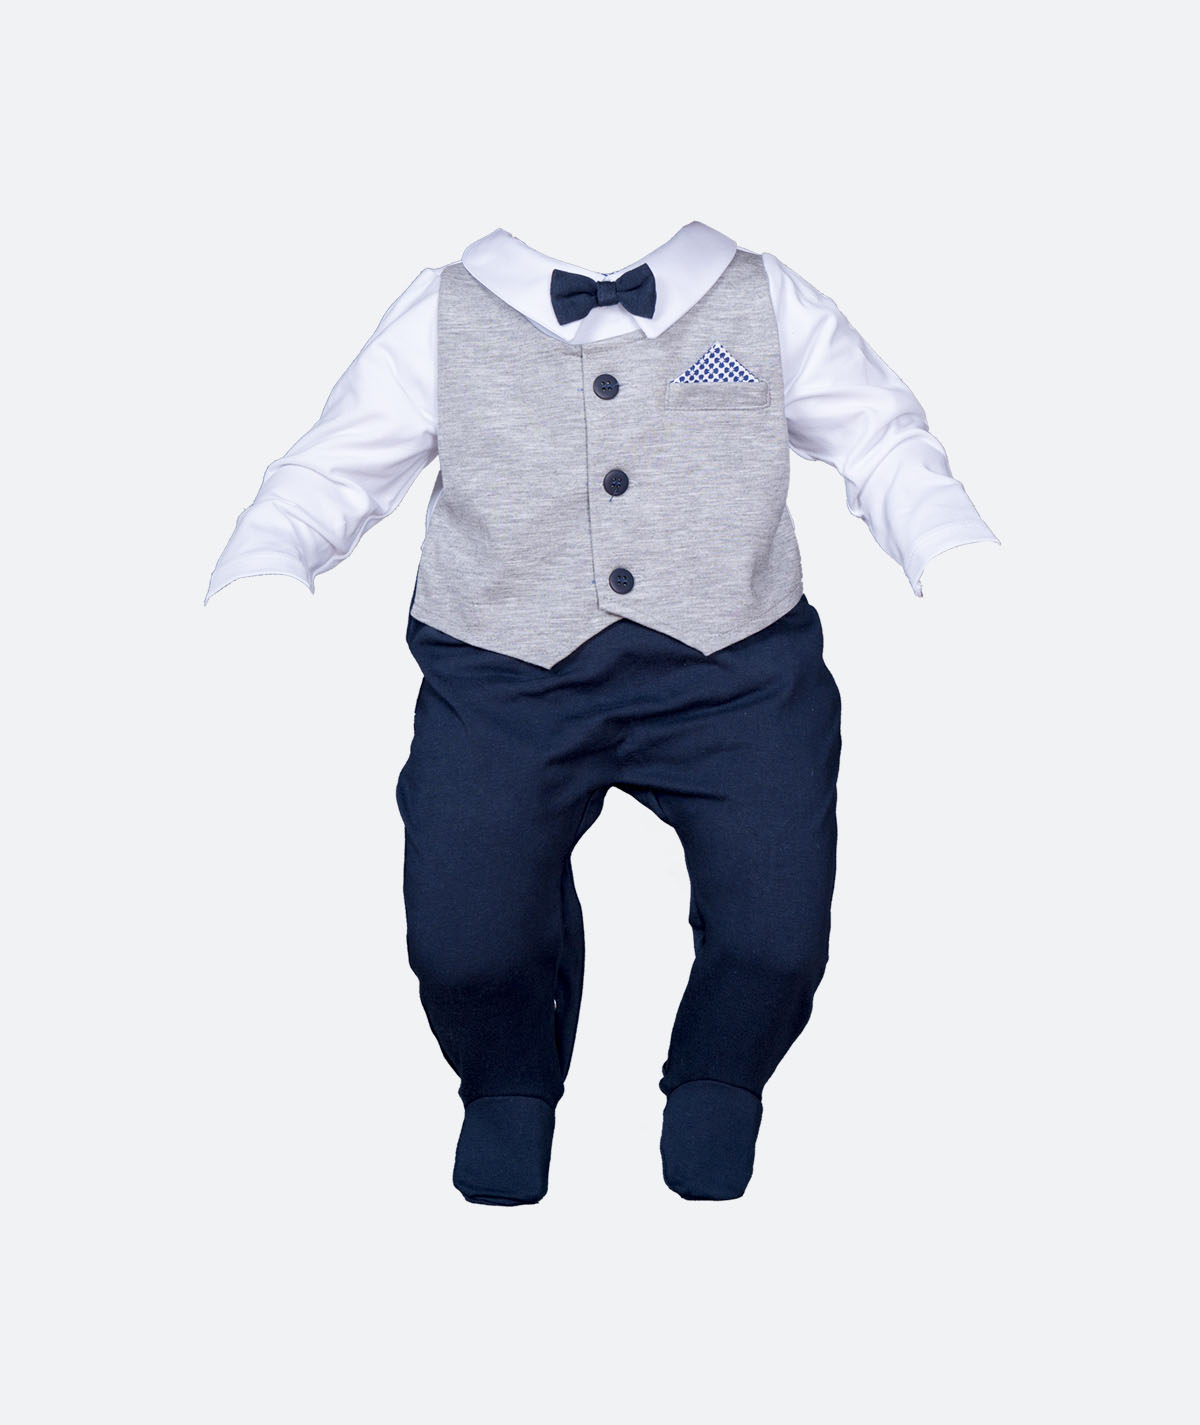 Jungen Weste gesteppt zum Festanzug Baby Anzug Taufanzug blau/braun NEU 